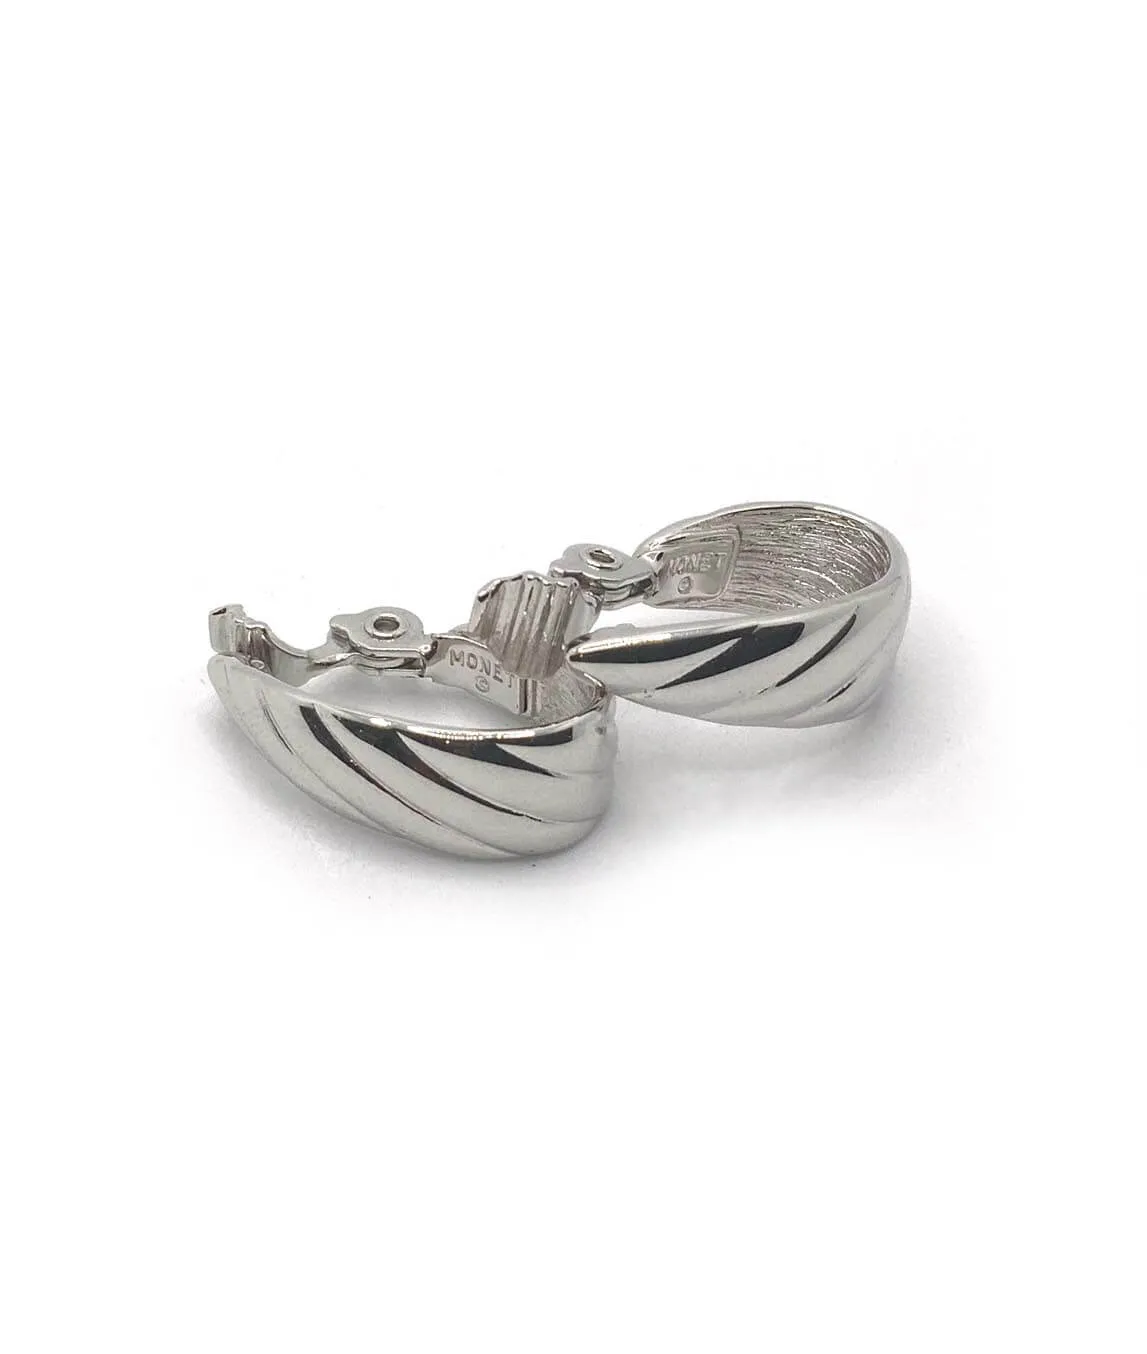 Monet silver tone clip-on half hoop earrings